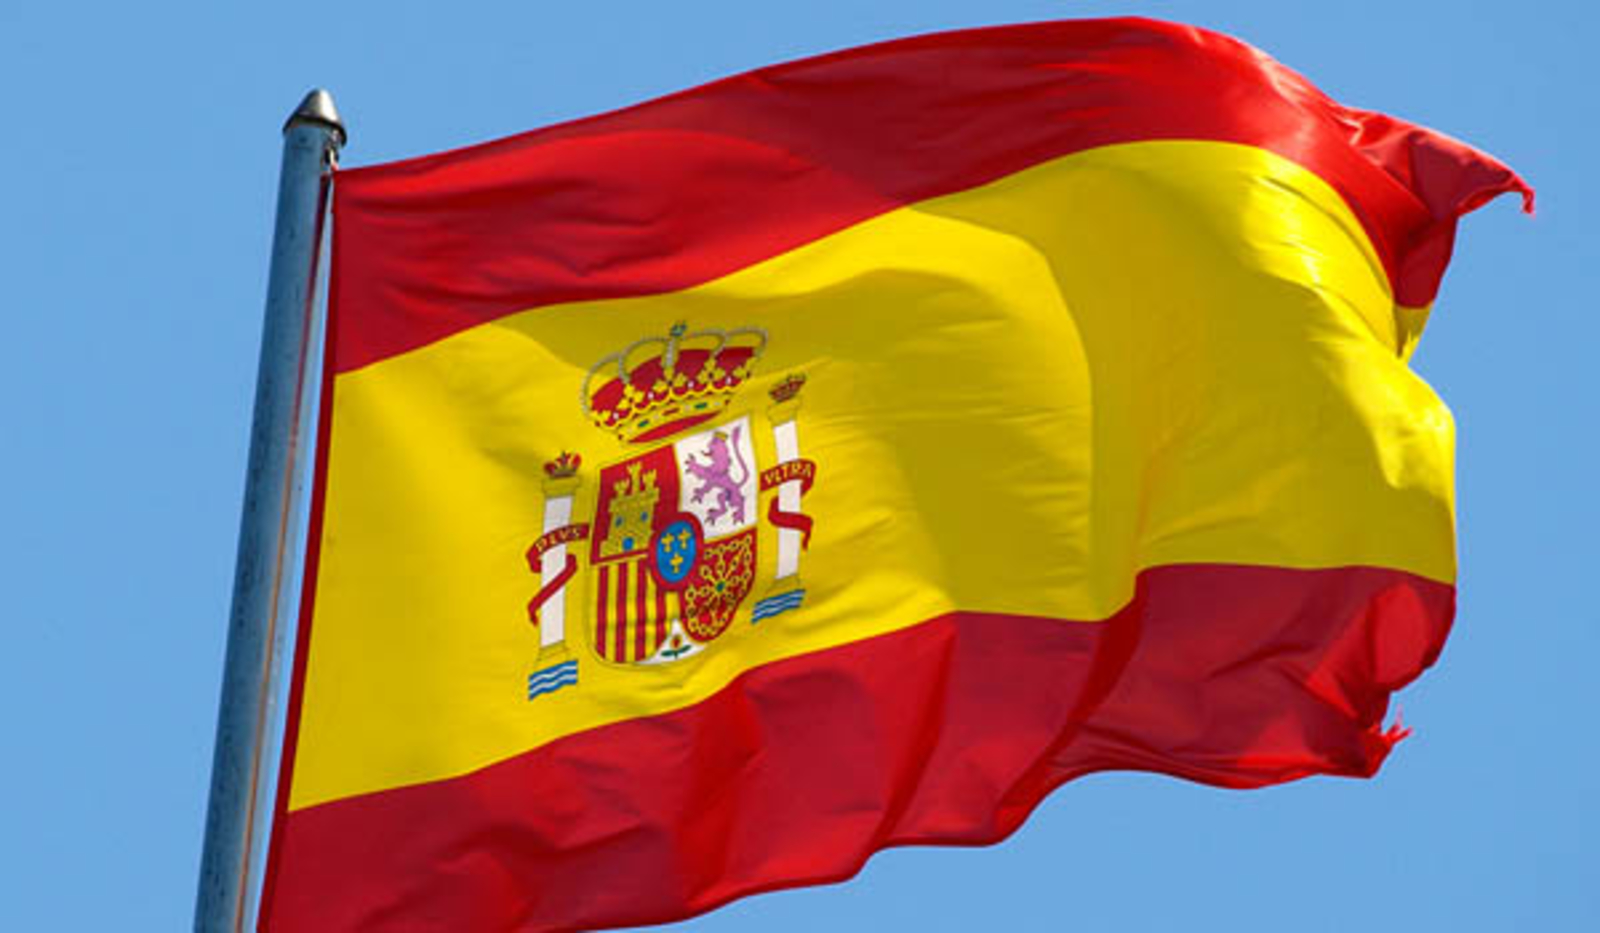 سانشيز يعلن إصلاحات في جهاز الاستخبارات الإسباني اثر فضيحة تجسس